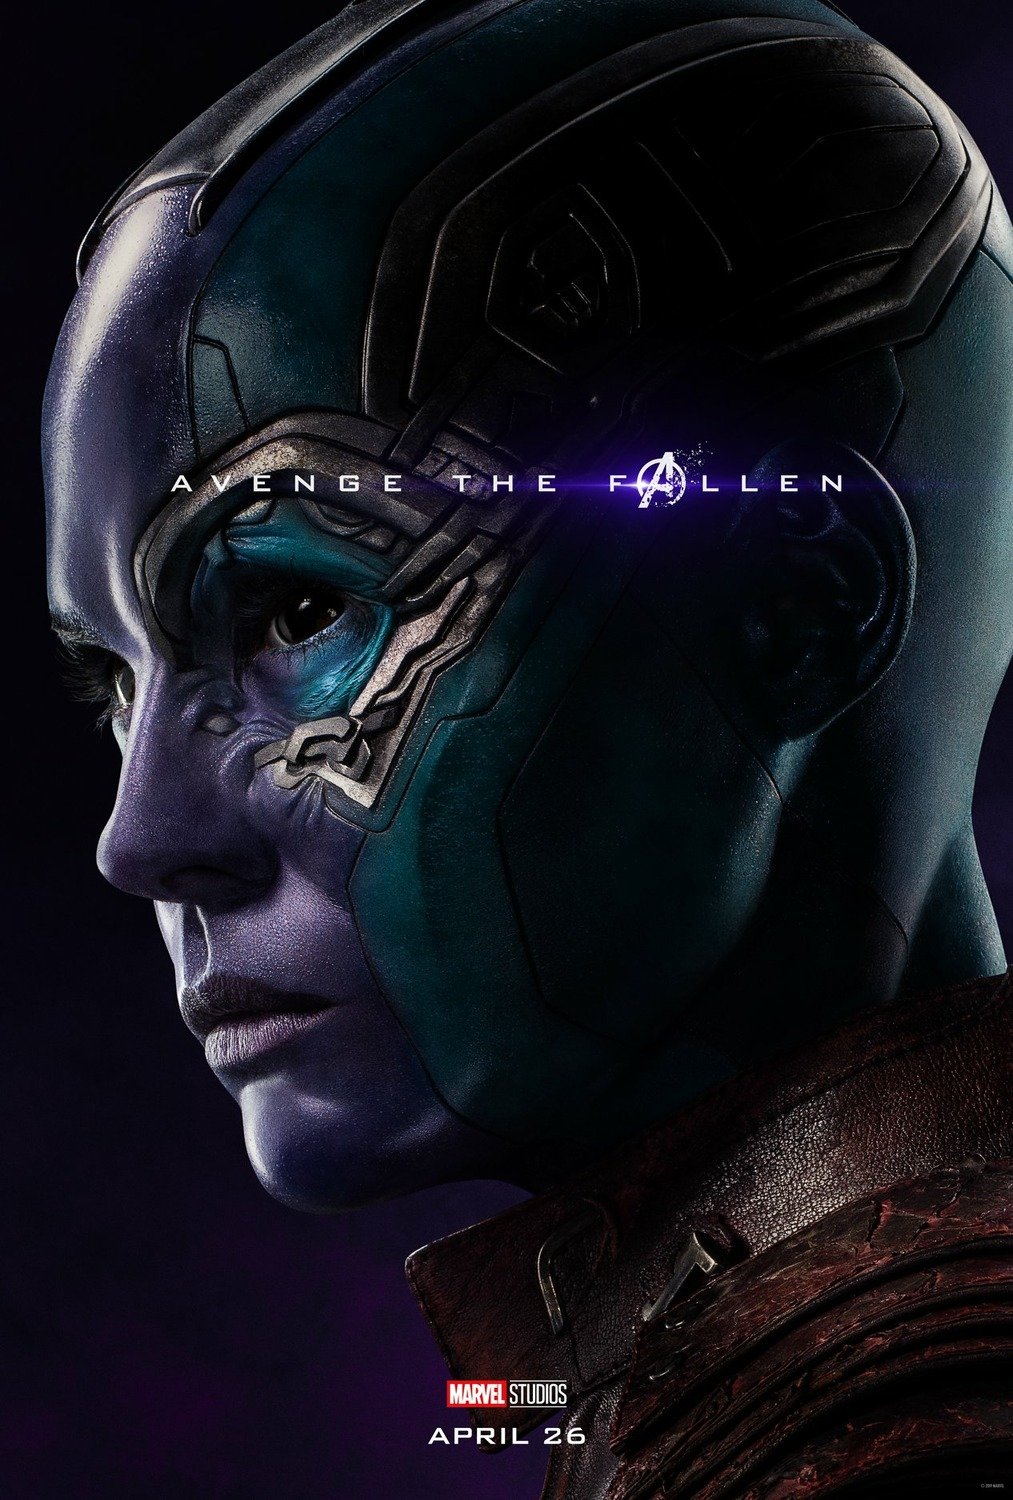 Poster du film Avengers: Endgame avec Nebula (Karen Gillan)